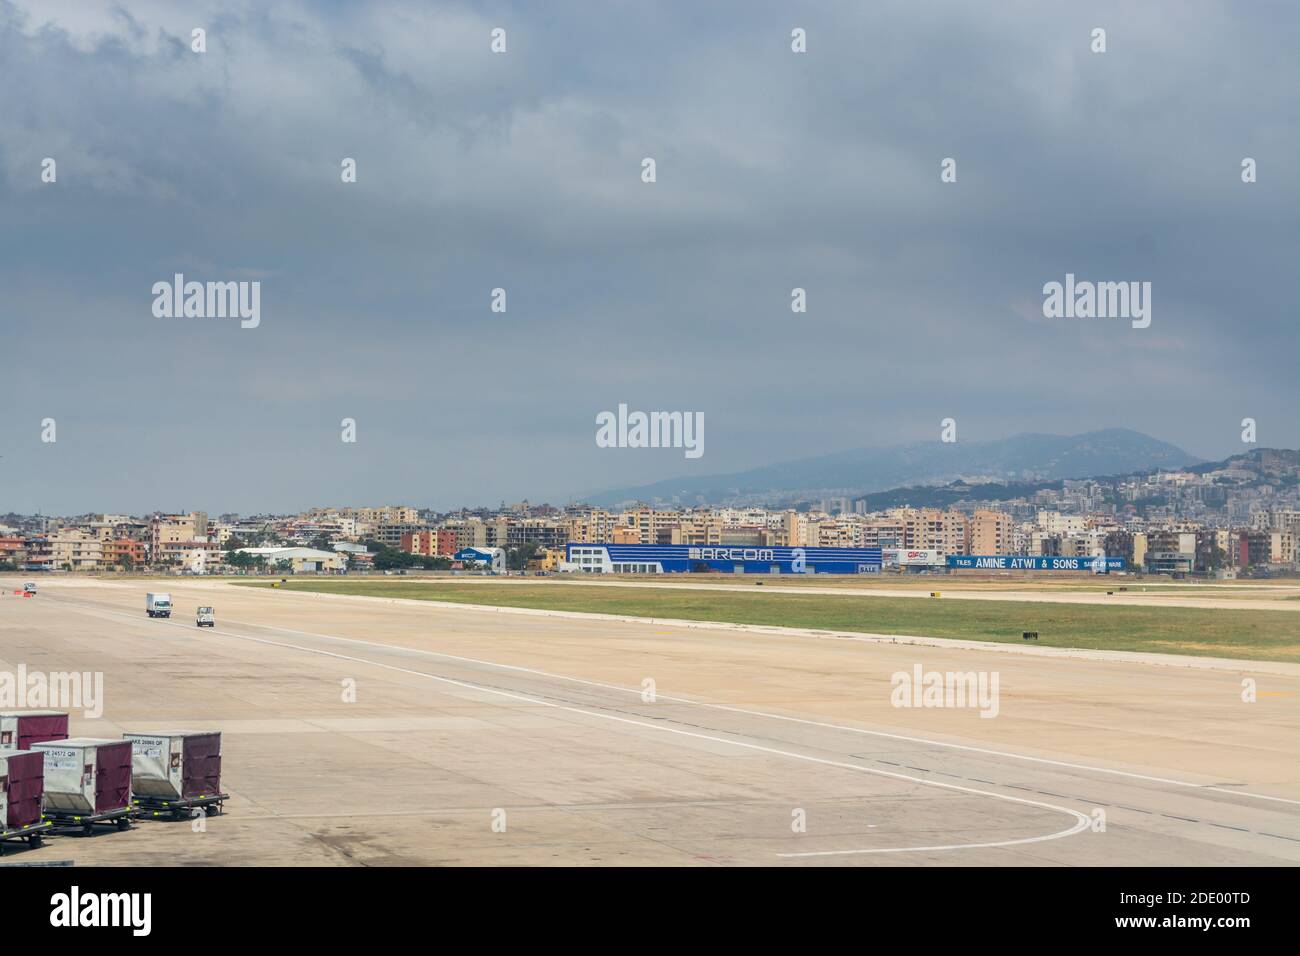 Airplanes at the Beirut Rafic Hariri International Airportof Beirut, Lebanon Stock Photo